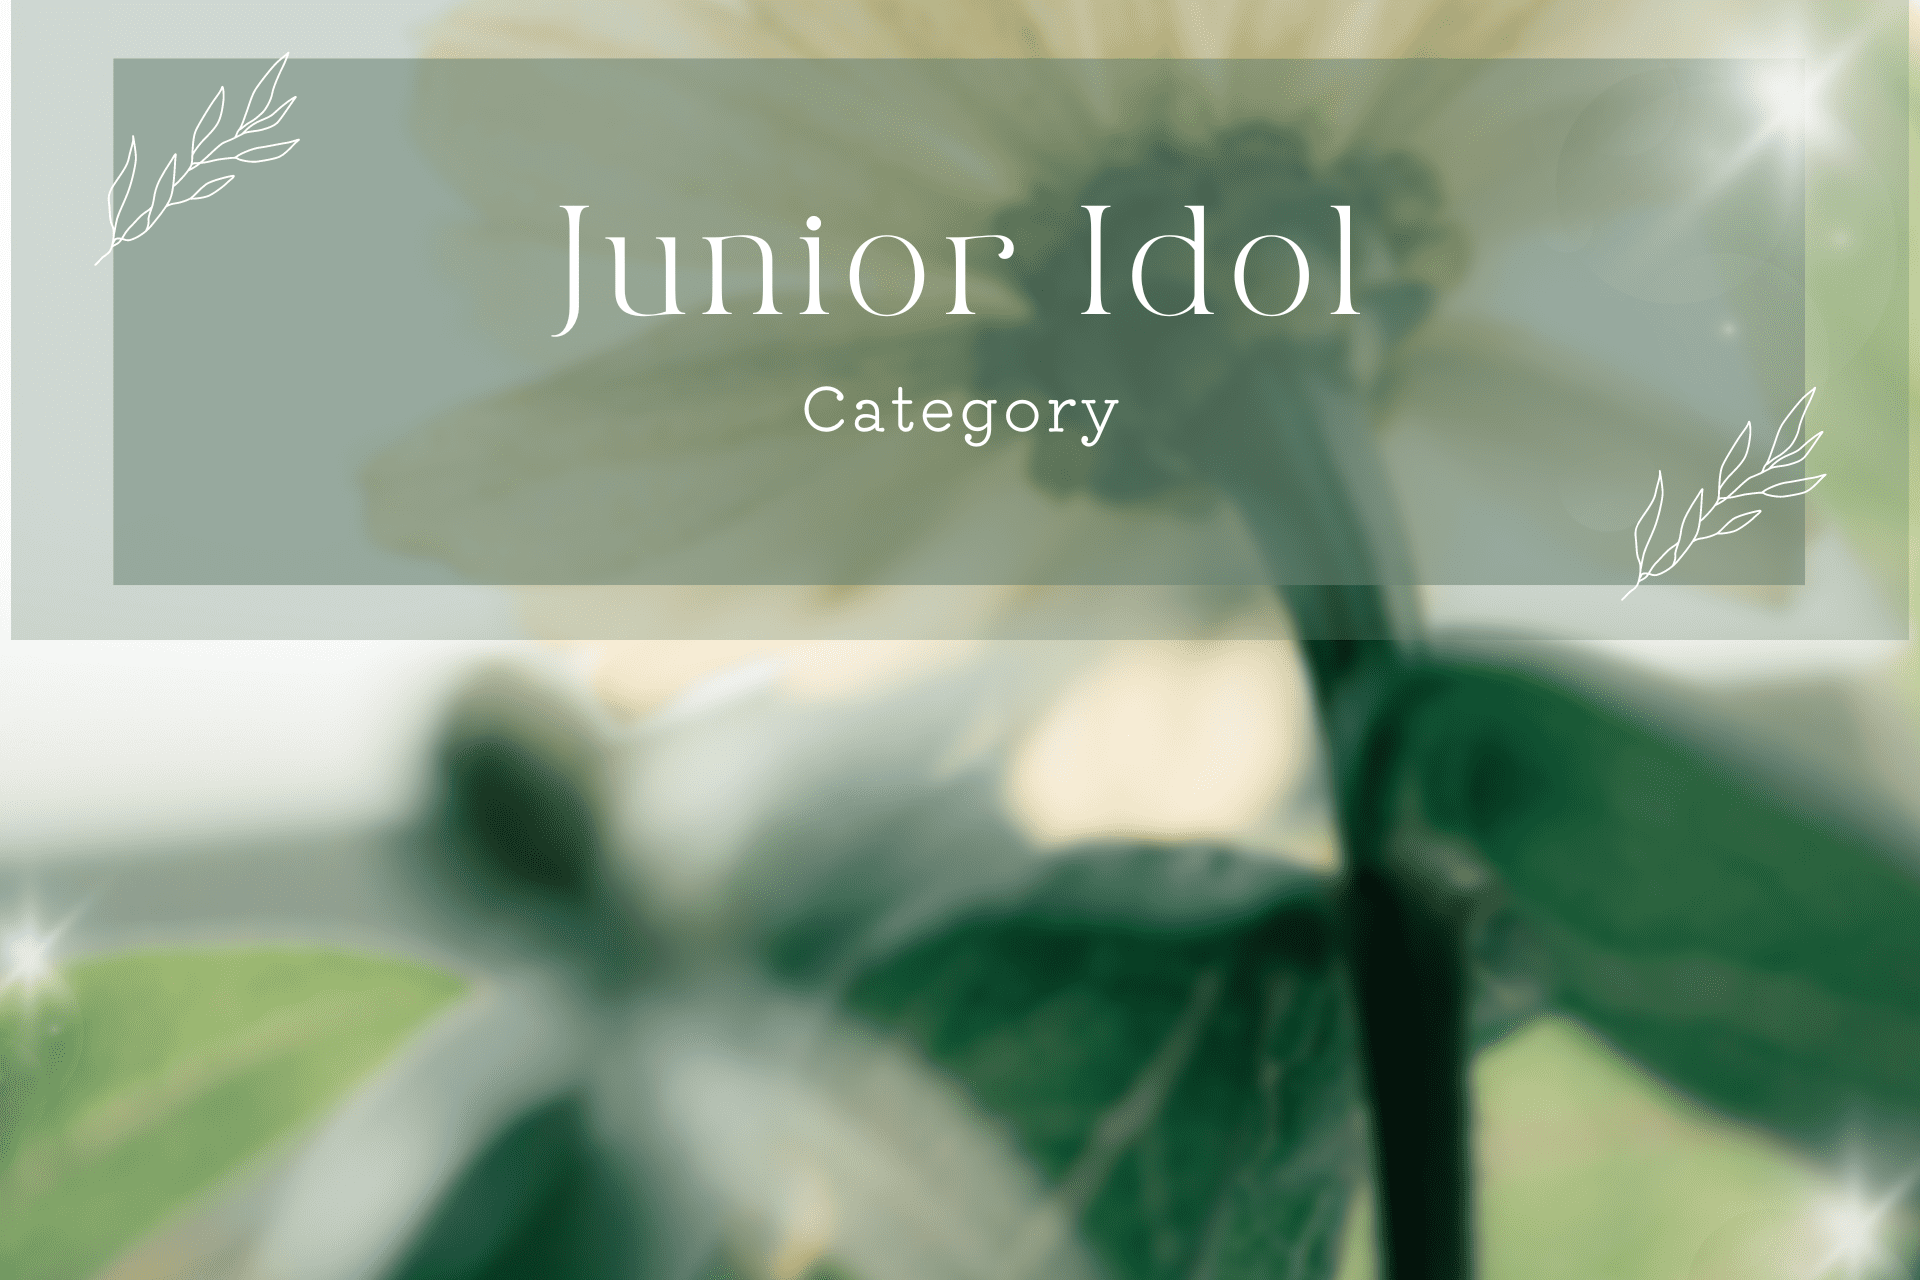 Junior idol